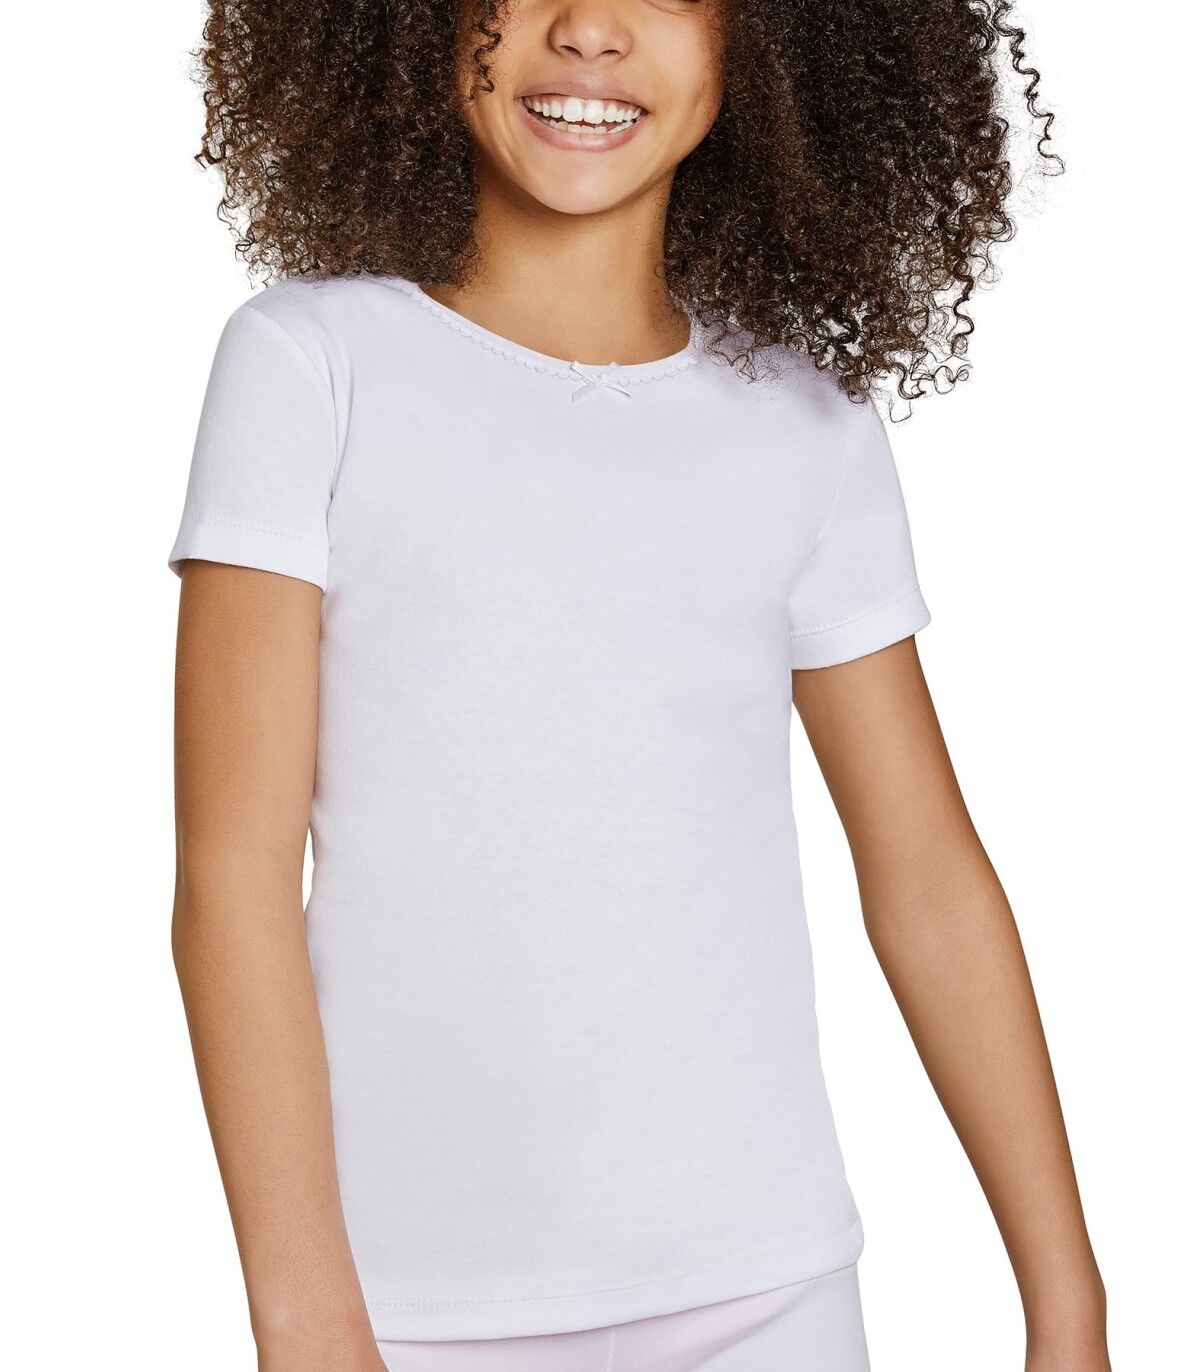 Camiseta infantil Manga corta Ysabel Mora 18307 6 Blanco